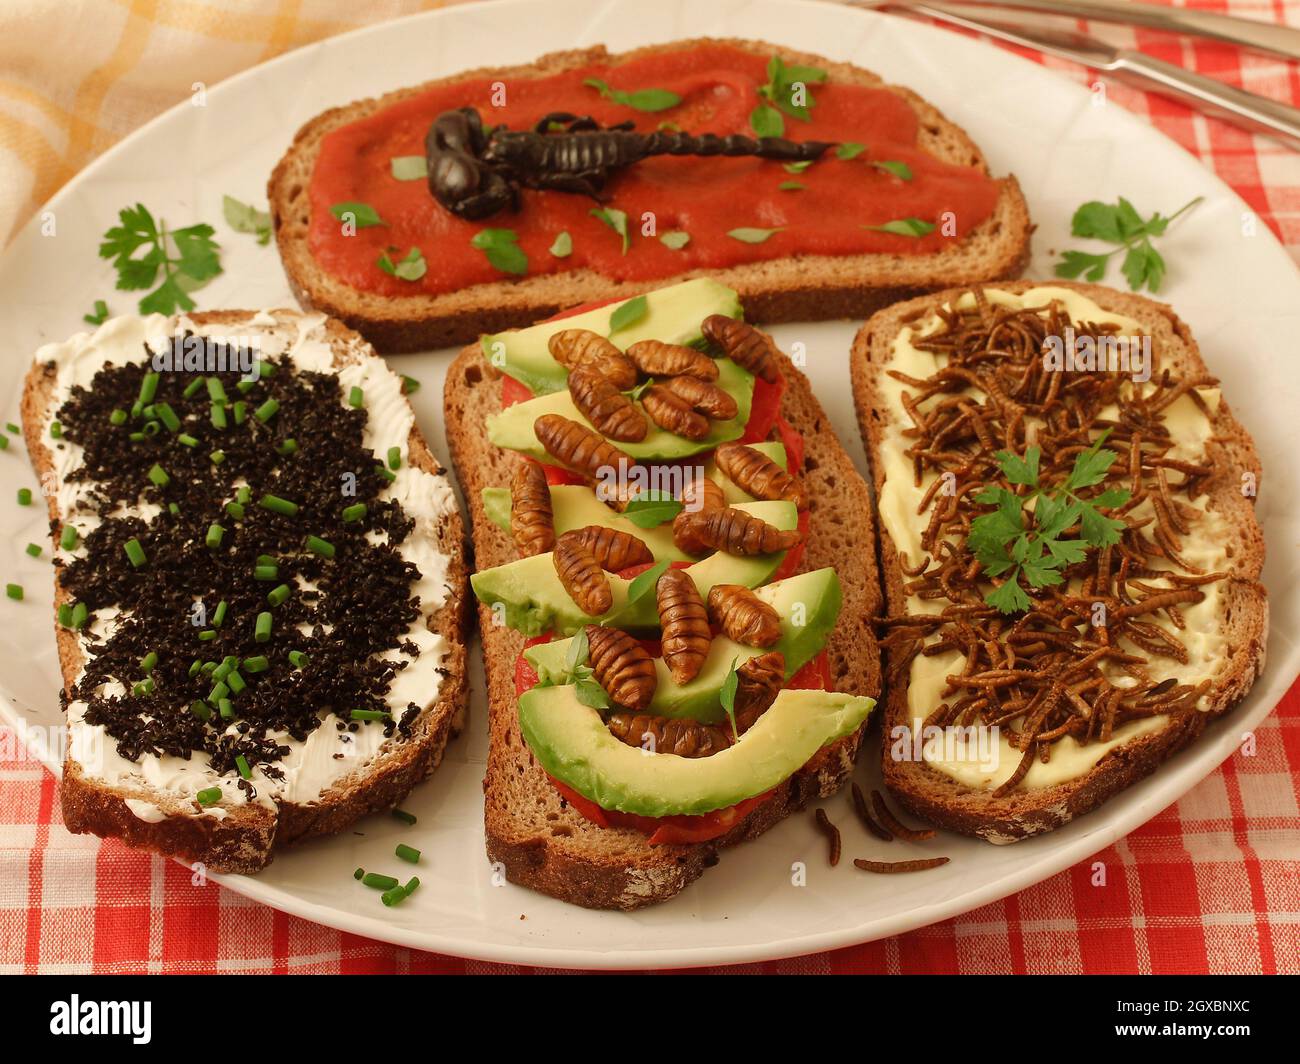 Insetti commestibili e aracnidi. Sopra: Scorpione nero con pomodoro fritto e basilico. Sotto, da sinistra a destra: Formiche nere con formaggio e erba cipollina, Foto Stock